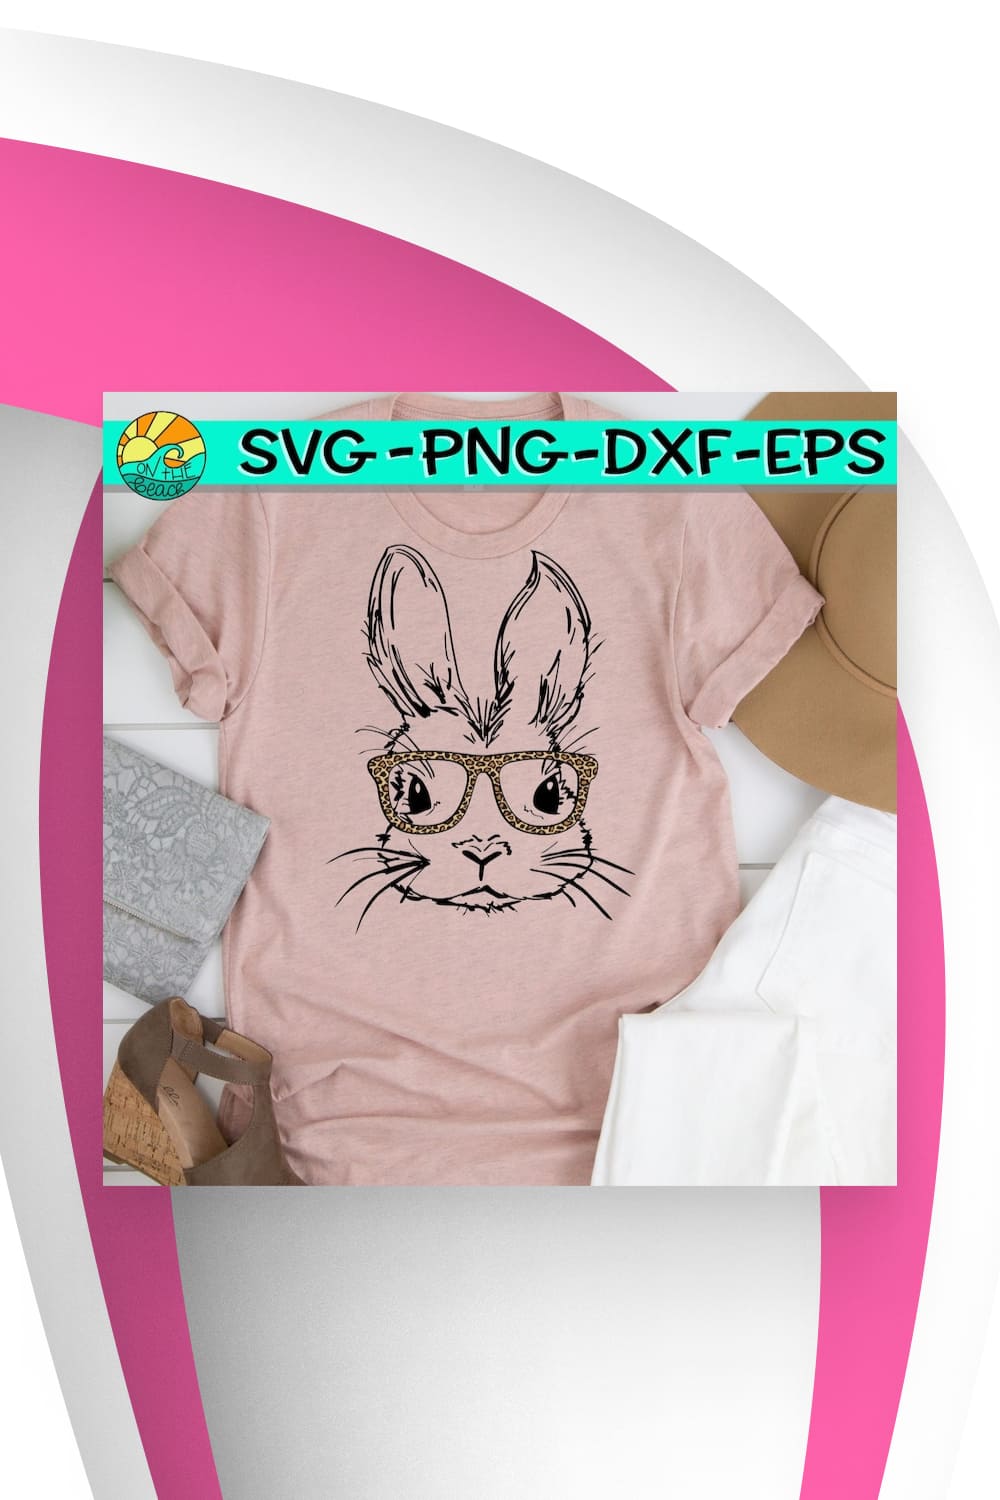 Nice bunny for modern t-shirt.